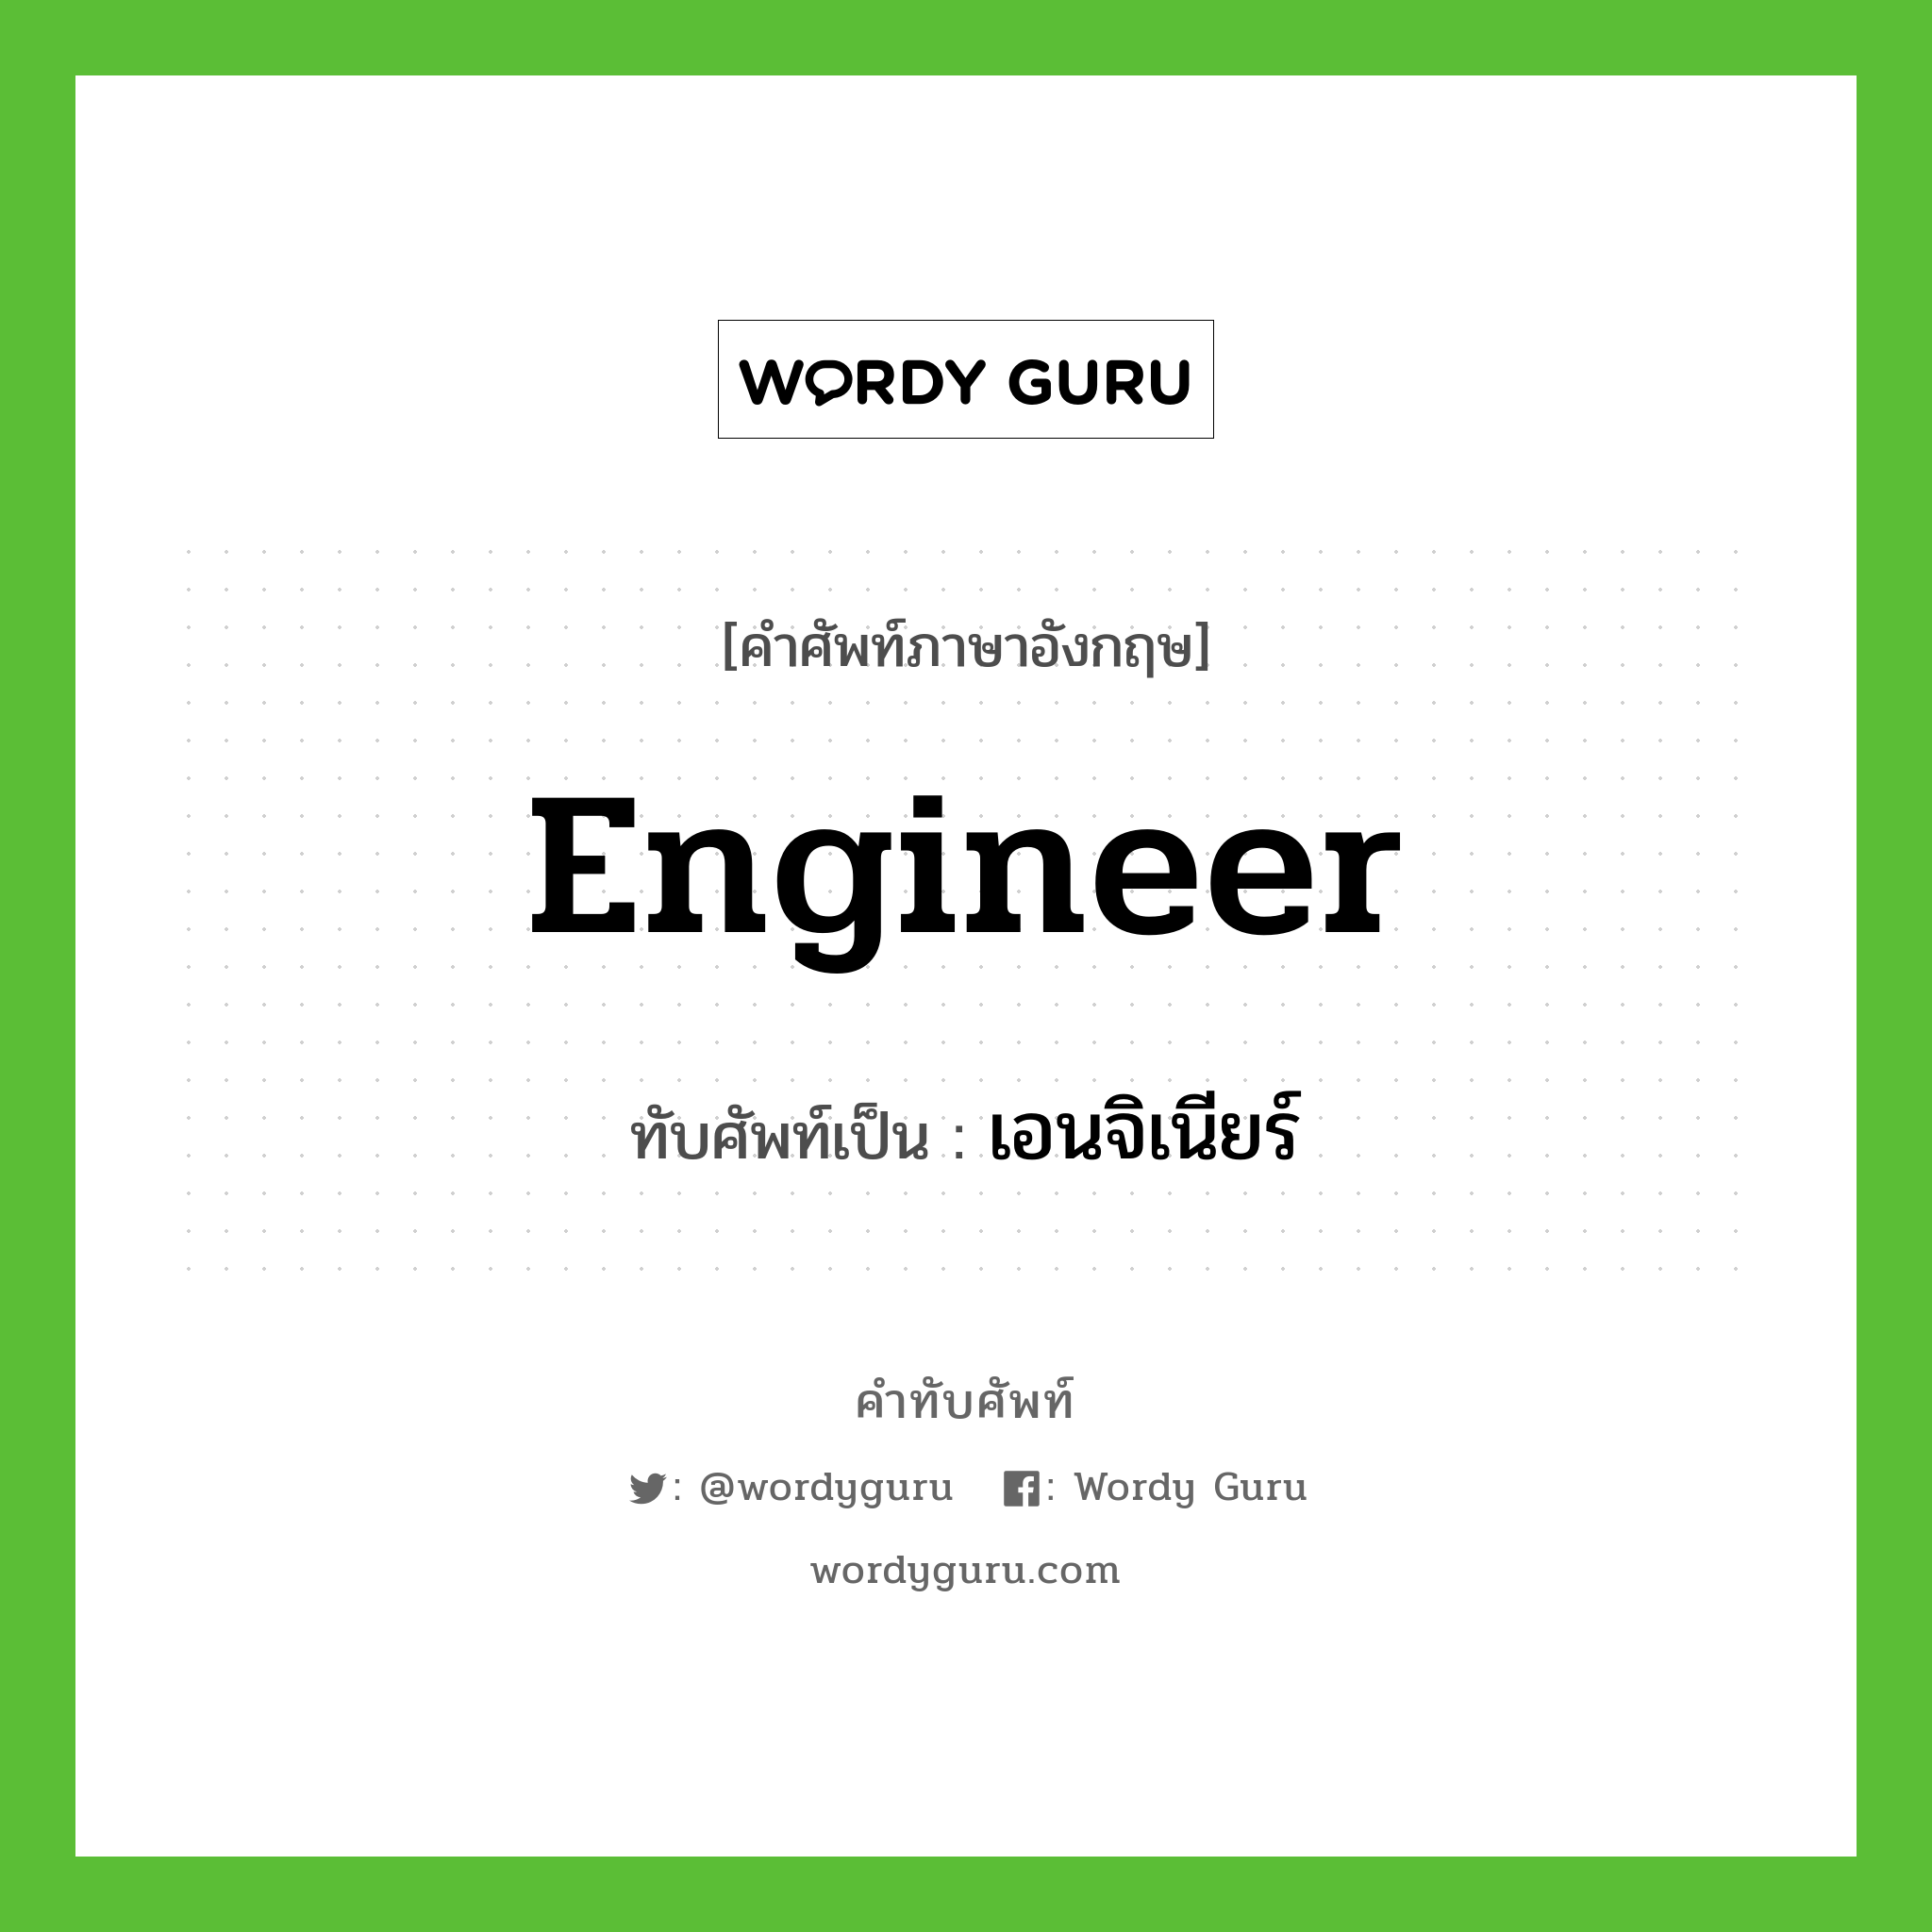 engineer เขียนเป็นคำไทยว่าอะไร?, คำศัพท์ภาษาอังกฤษ engineer ทับศัพท์เป็น เอนจิเนียร์